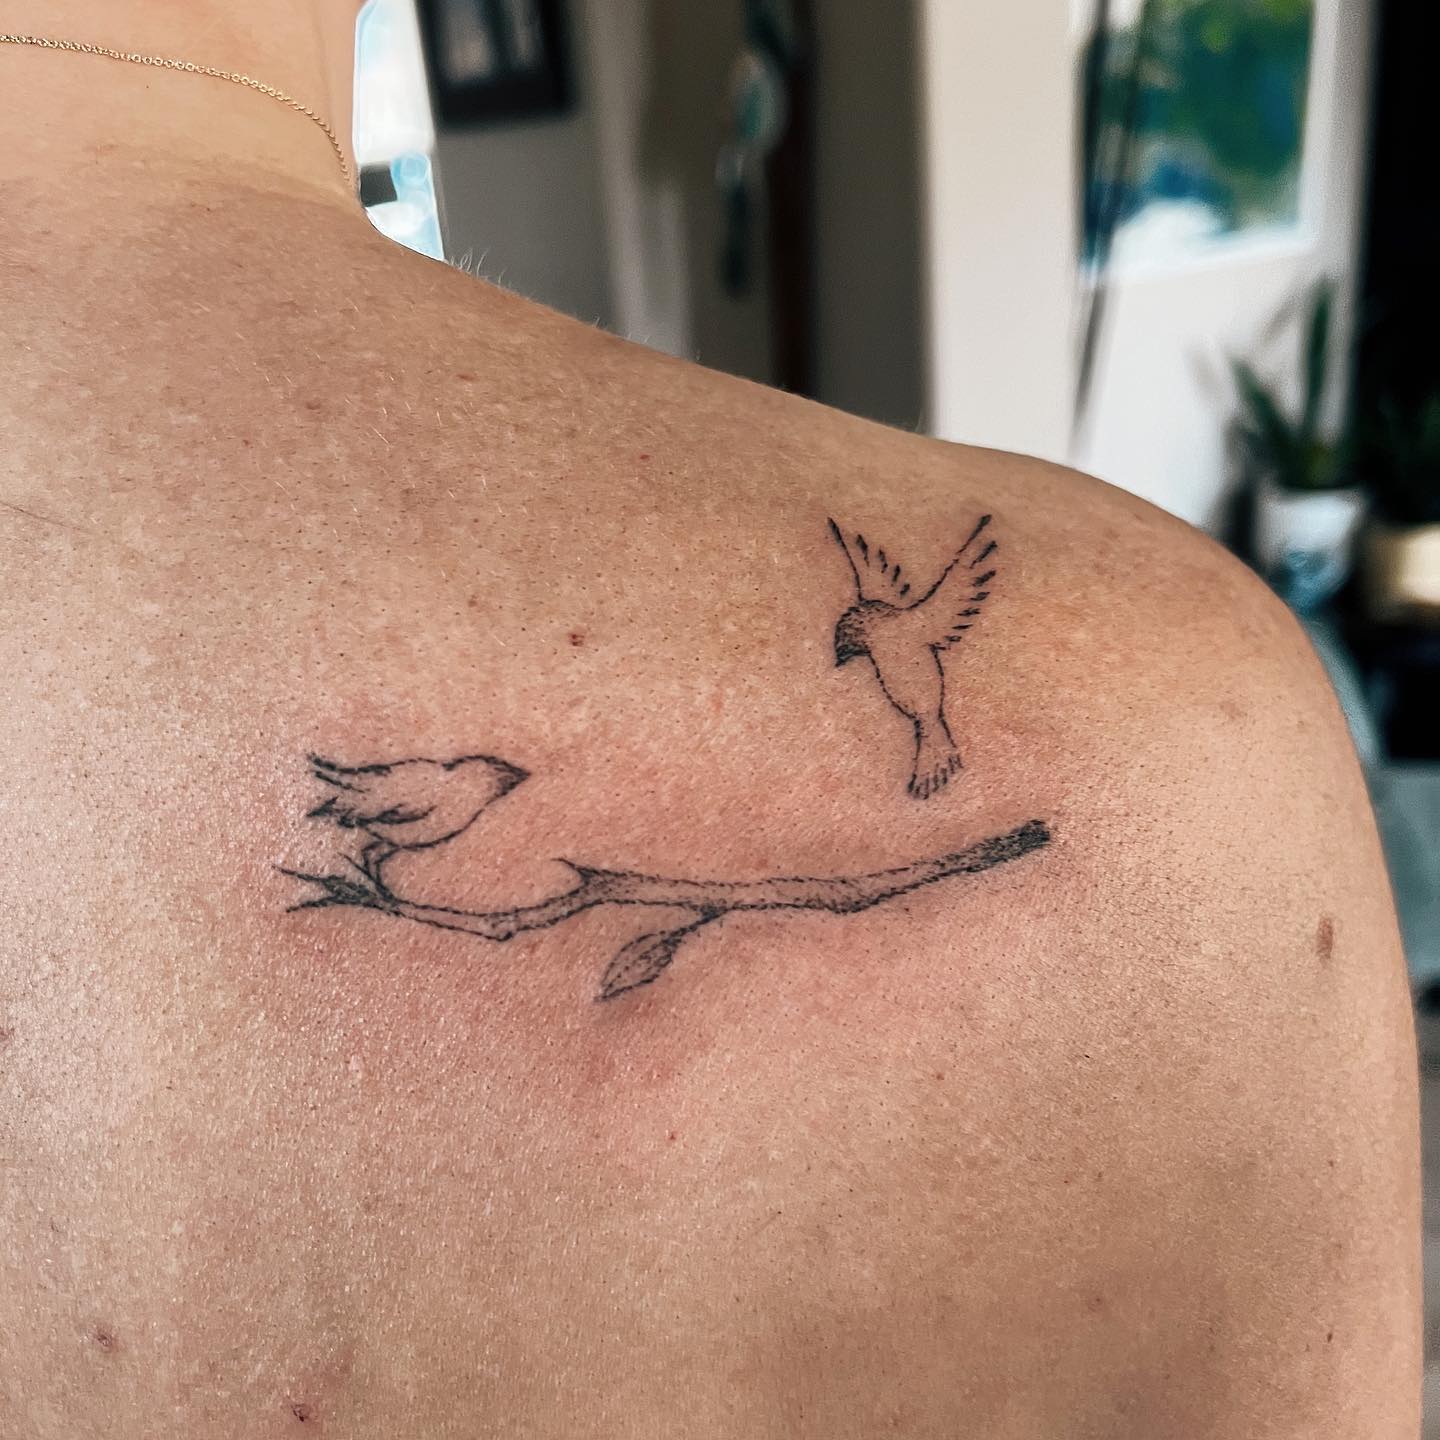 Tatuaje de dos pájaros